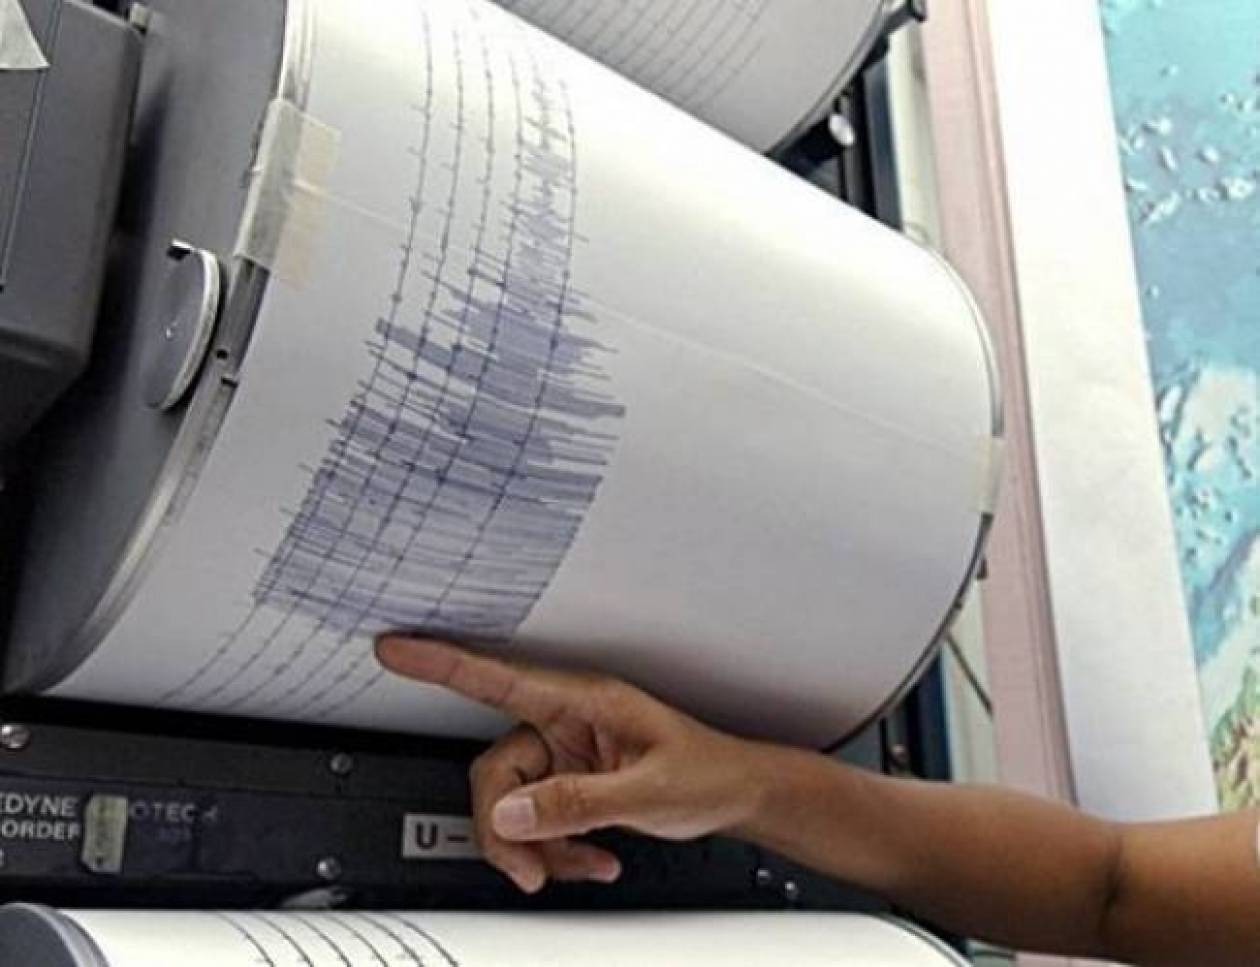 4.6 Richter aftershock in Kefalonia